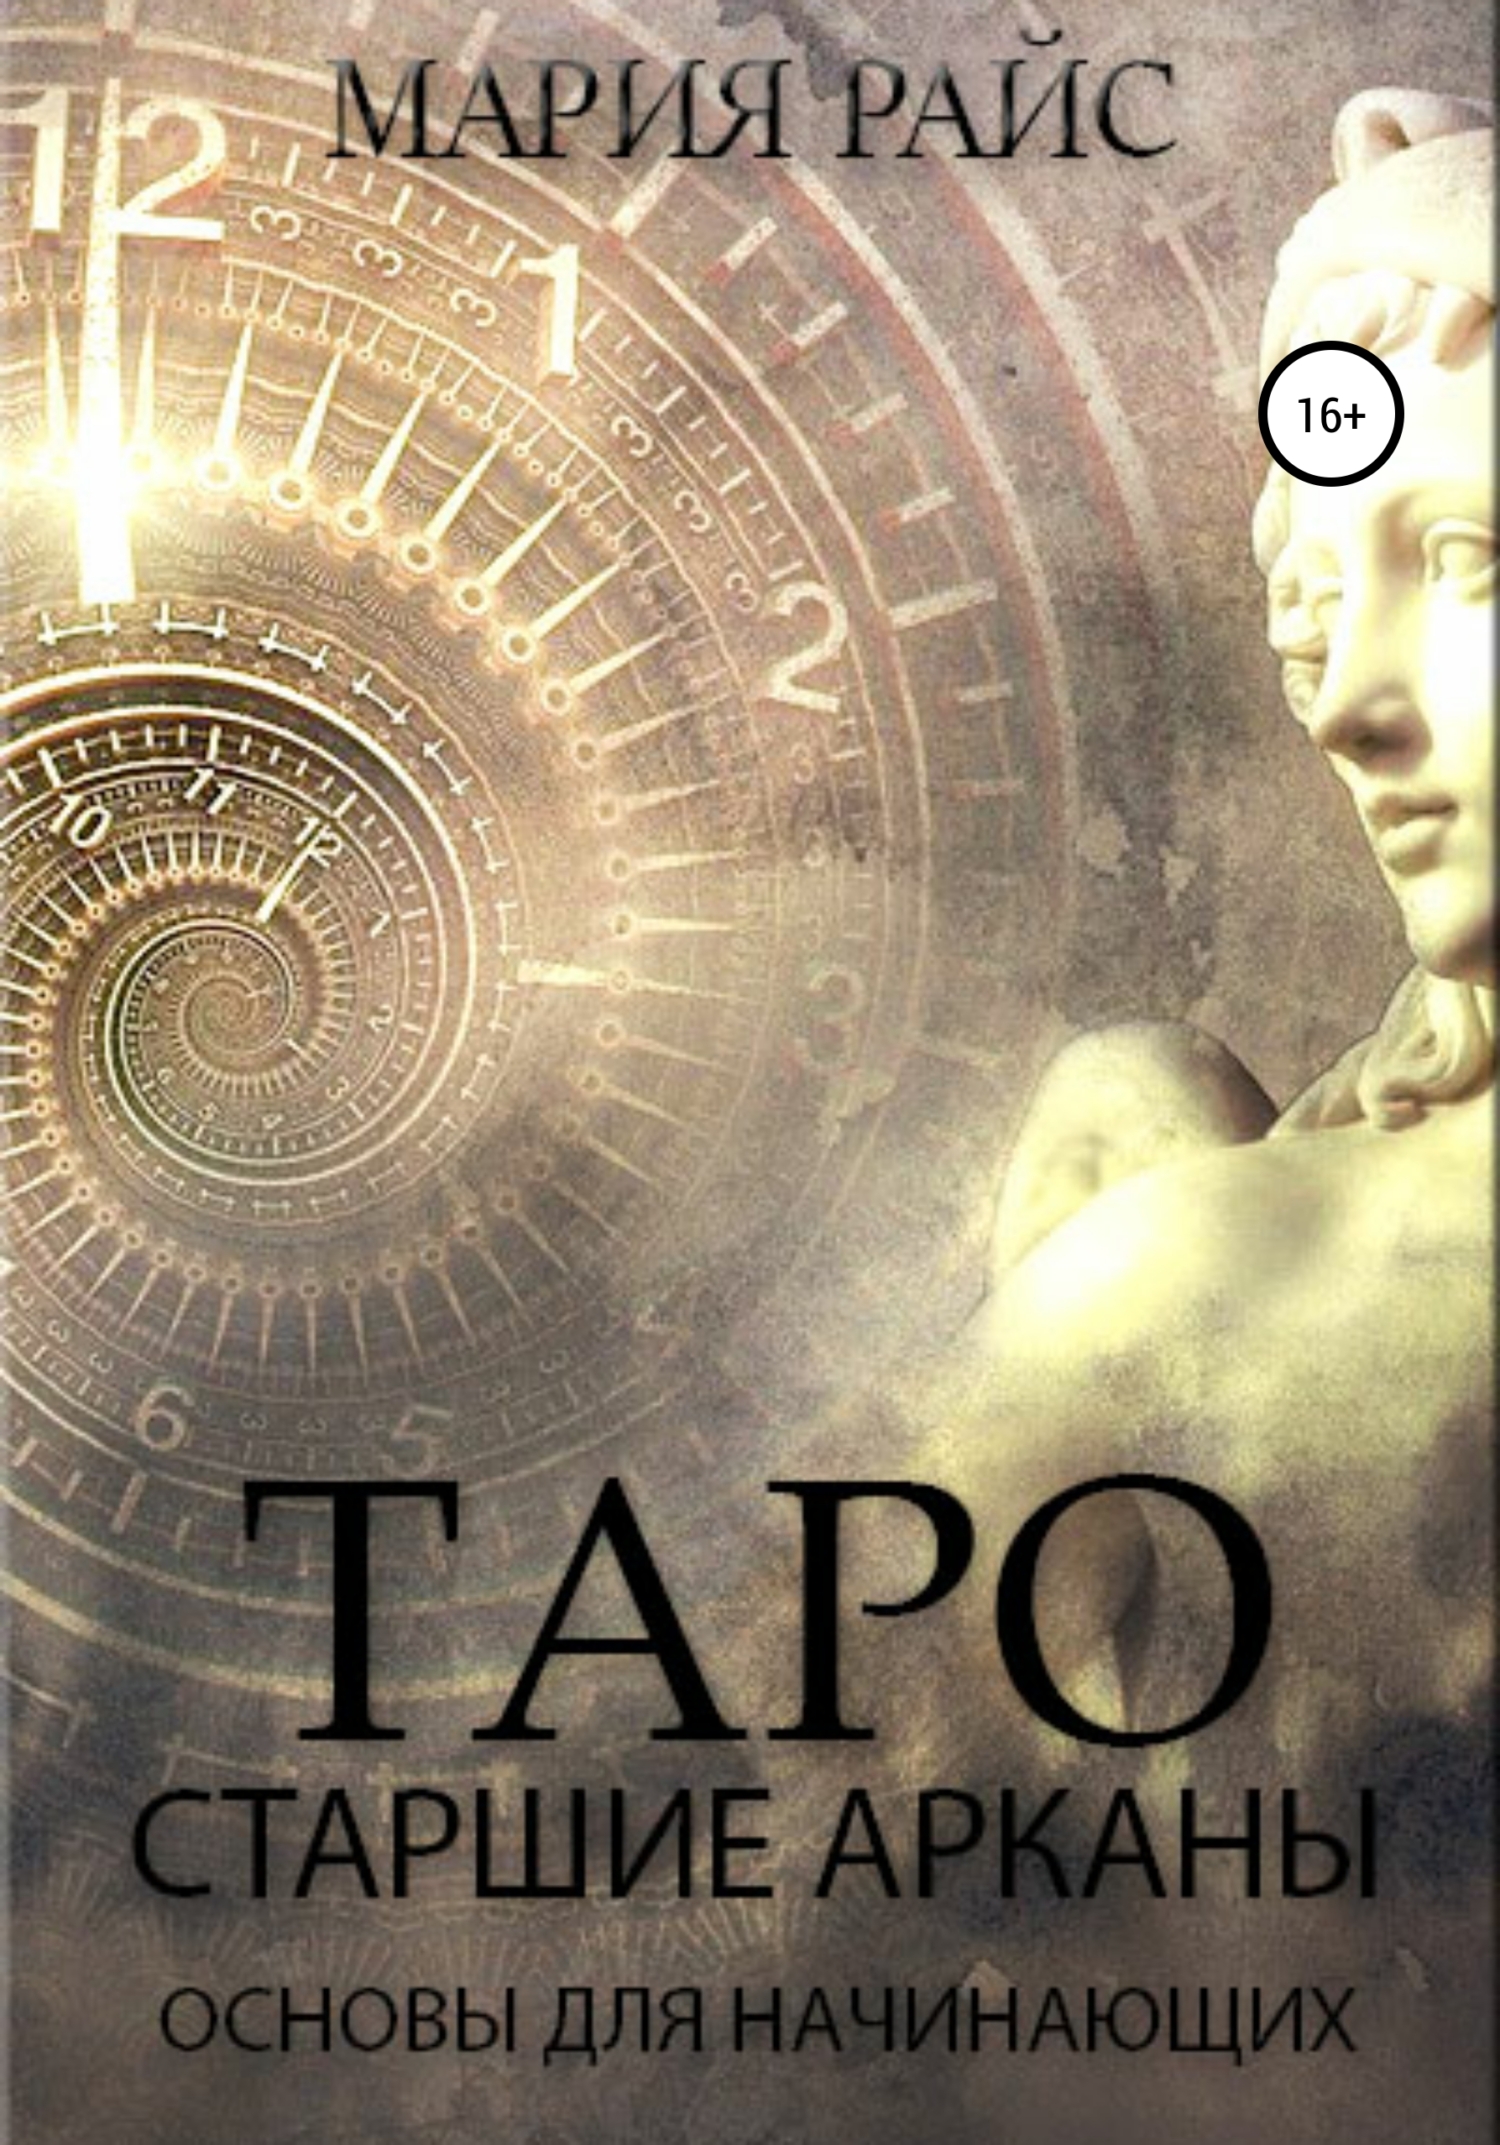 Как научиться гадать и зарабатывать на Таро, Татьяна Танго – скачать книгу fb2, epub, pdf на ЛитРес